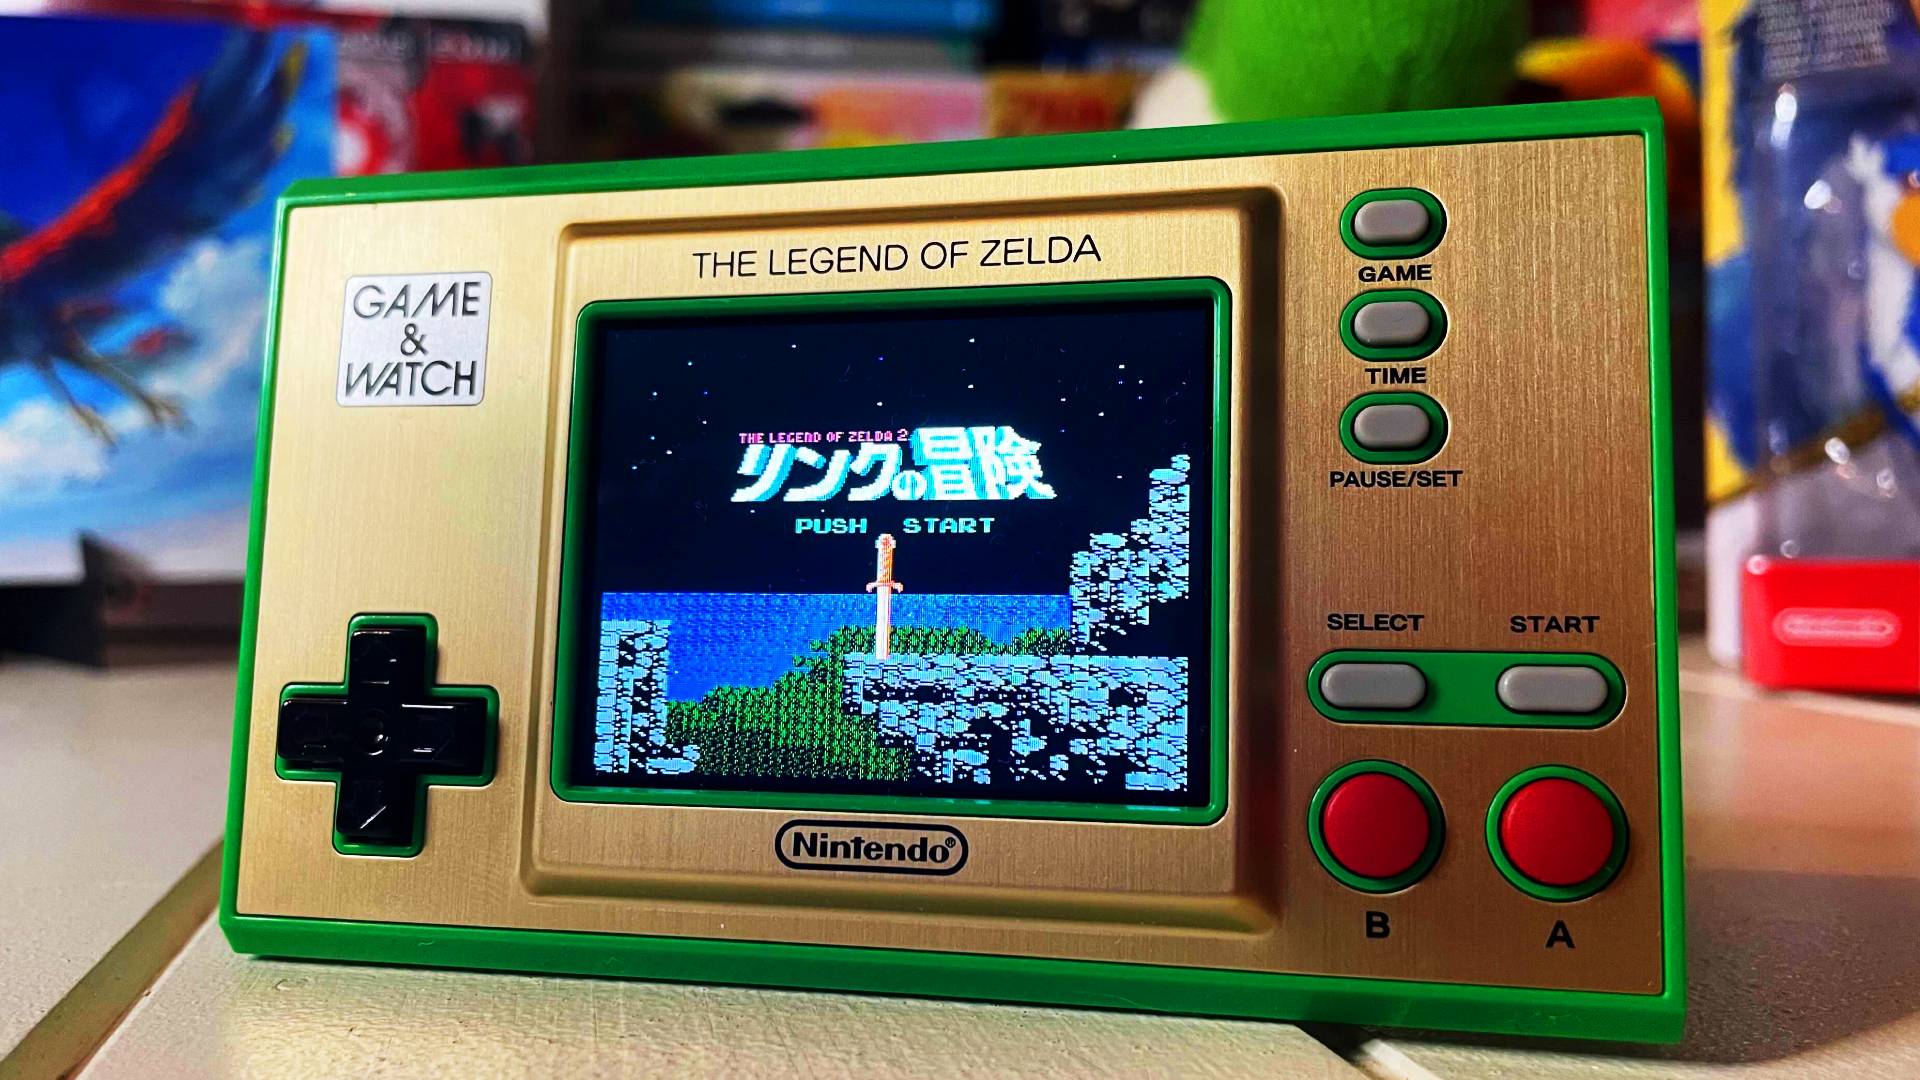 Game & Watch: The Legend of Zelda?, Nintendo NES Classic